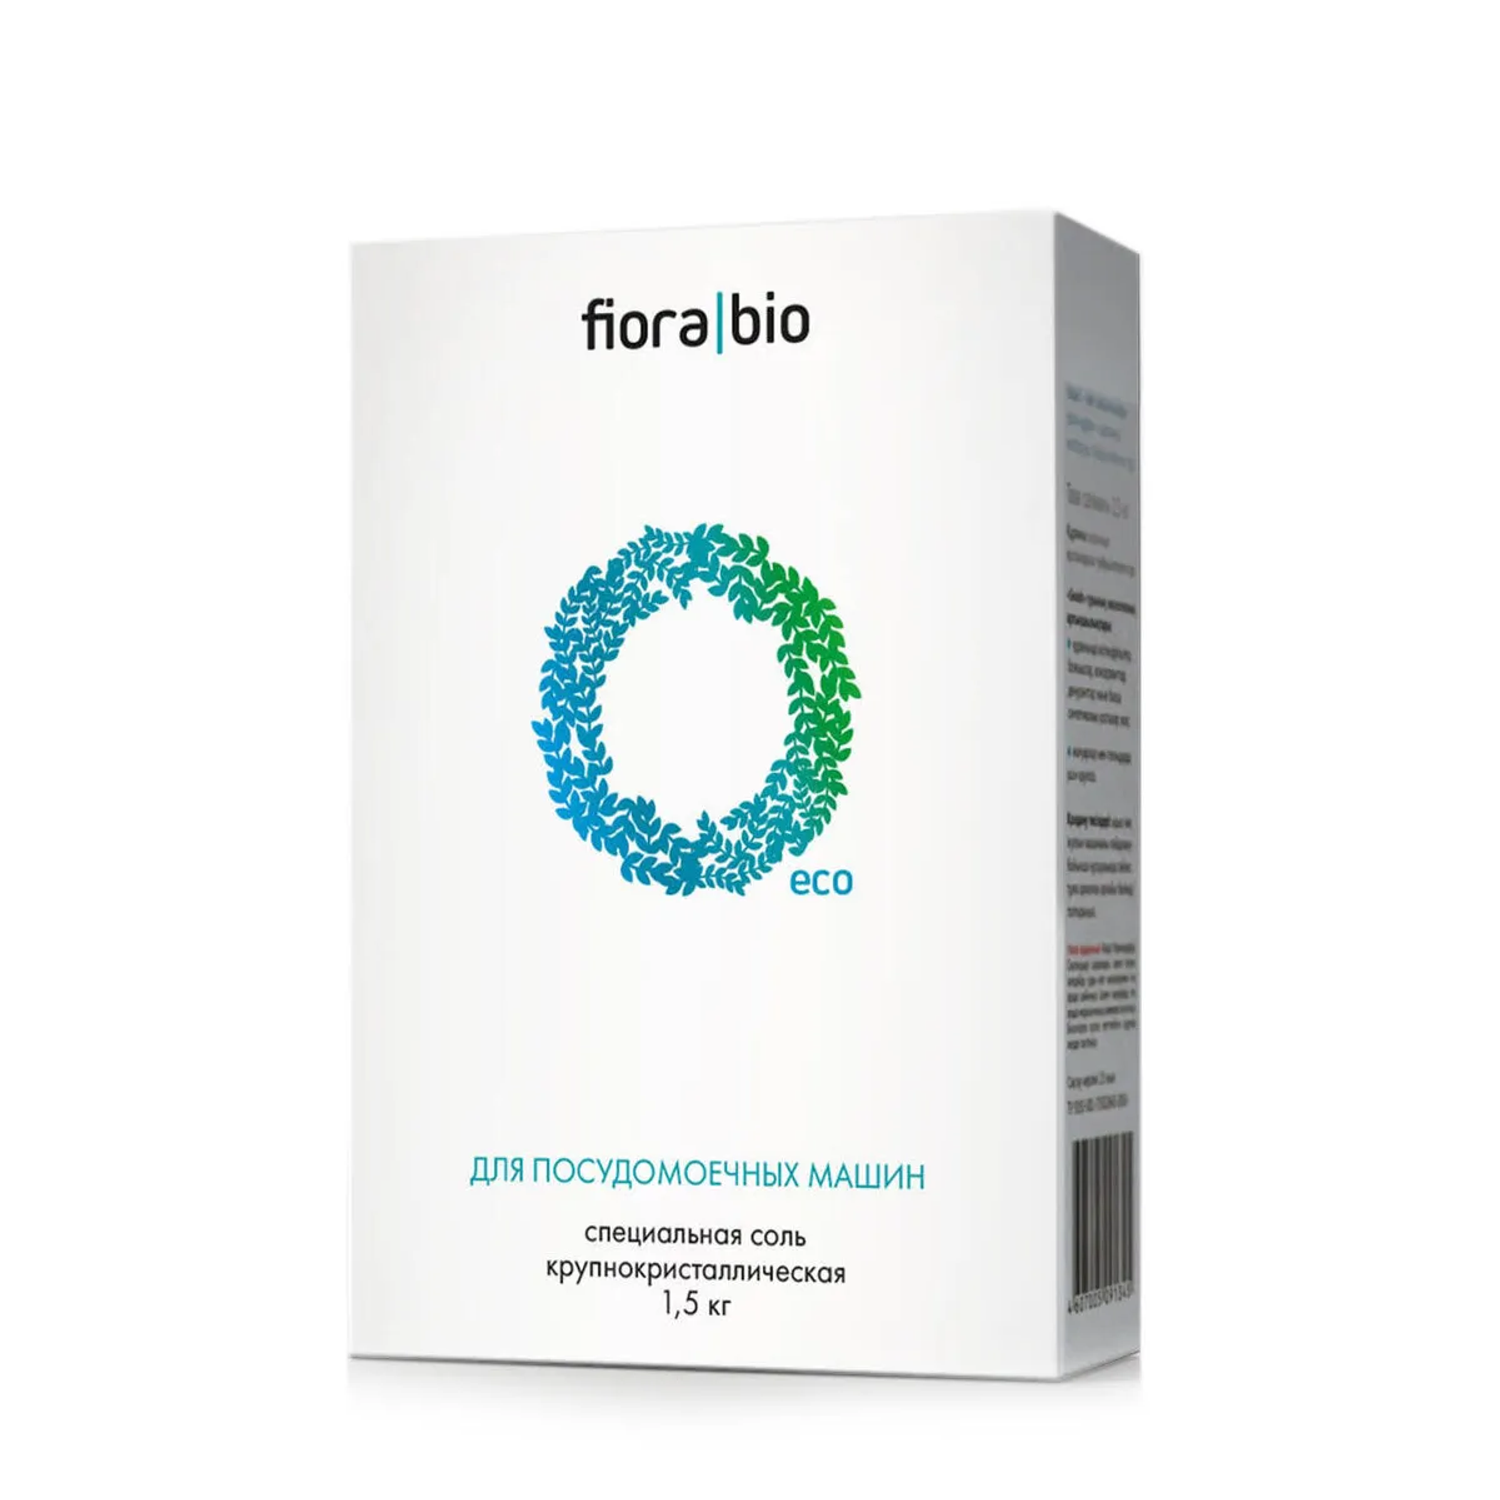 Эко соль Fiora Bio специальная посудомоечных машин крупнокристаллическая эко 1.5кг - фото 1